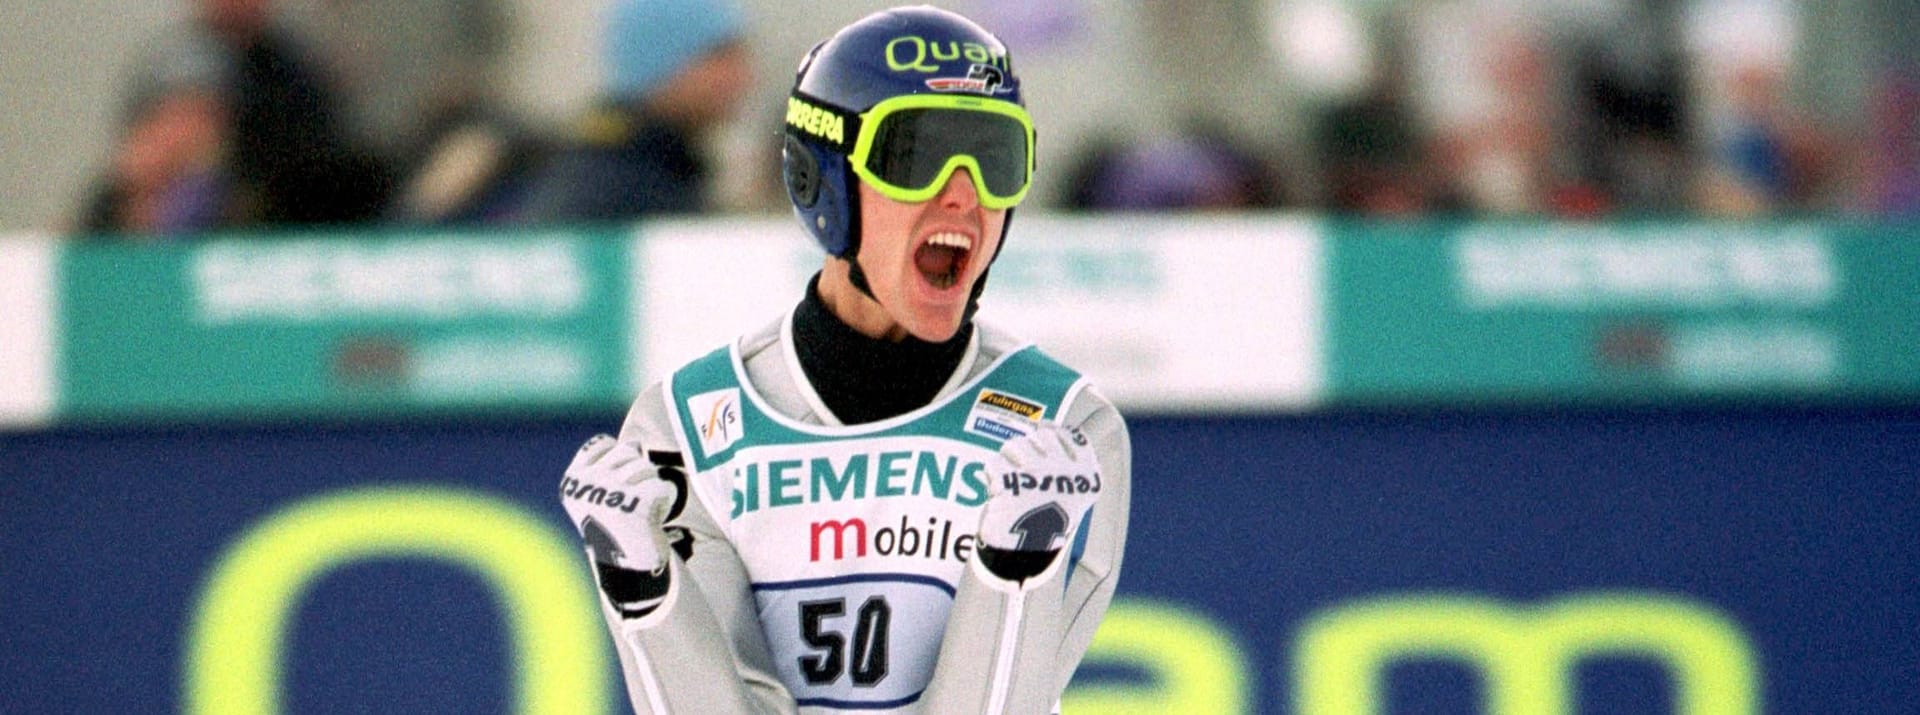 Sven Hannawald im Jahr 2002: Er gewann als Erster die Vierschanzentournee und siegte an allen vier Orten.